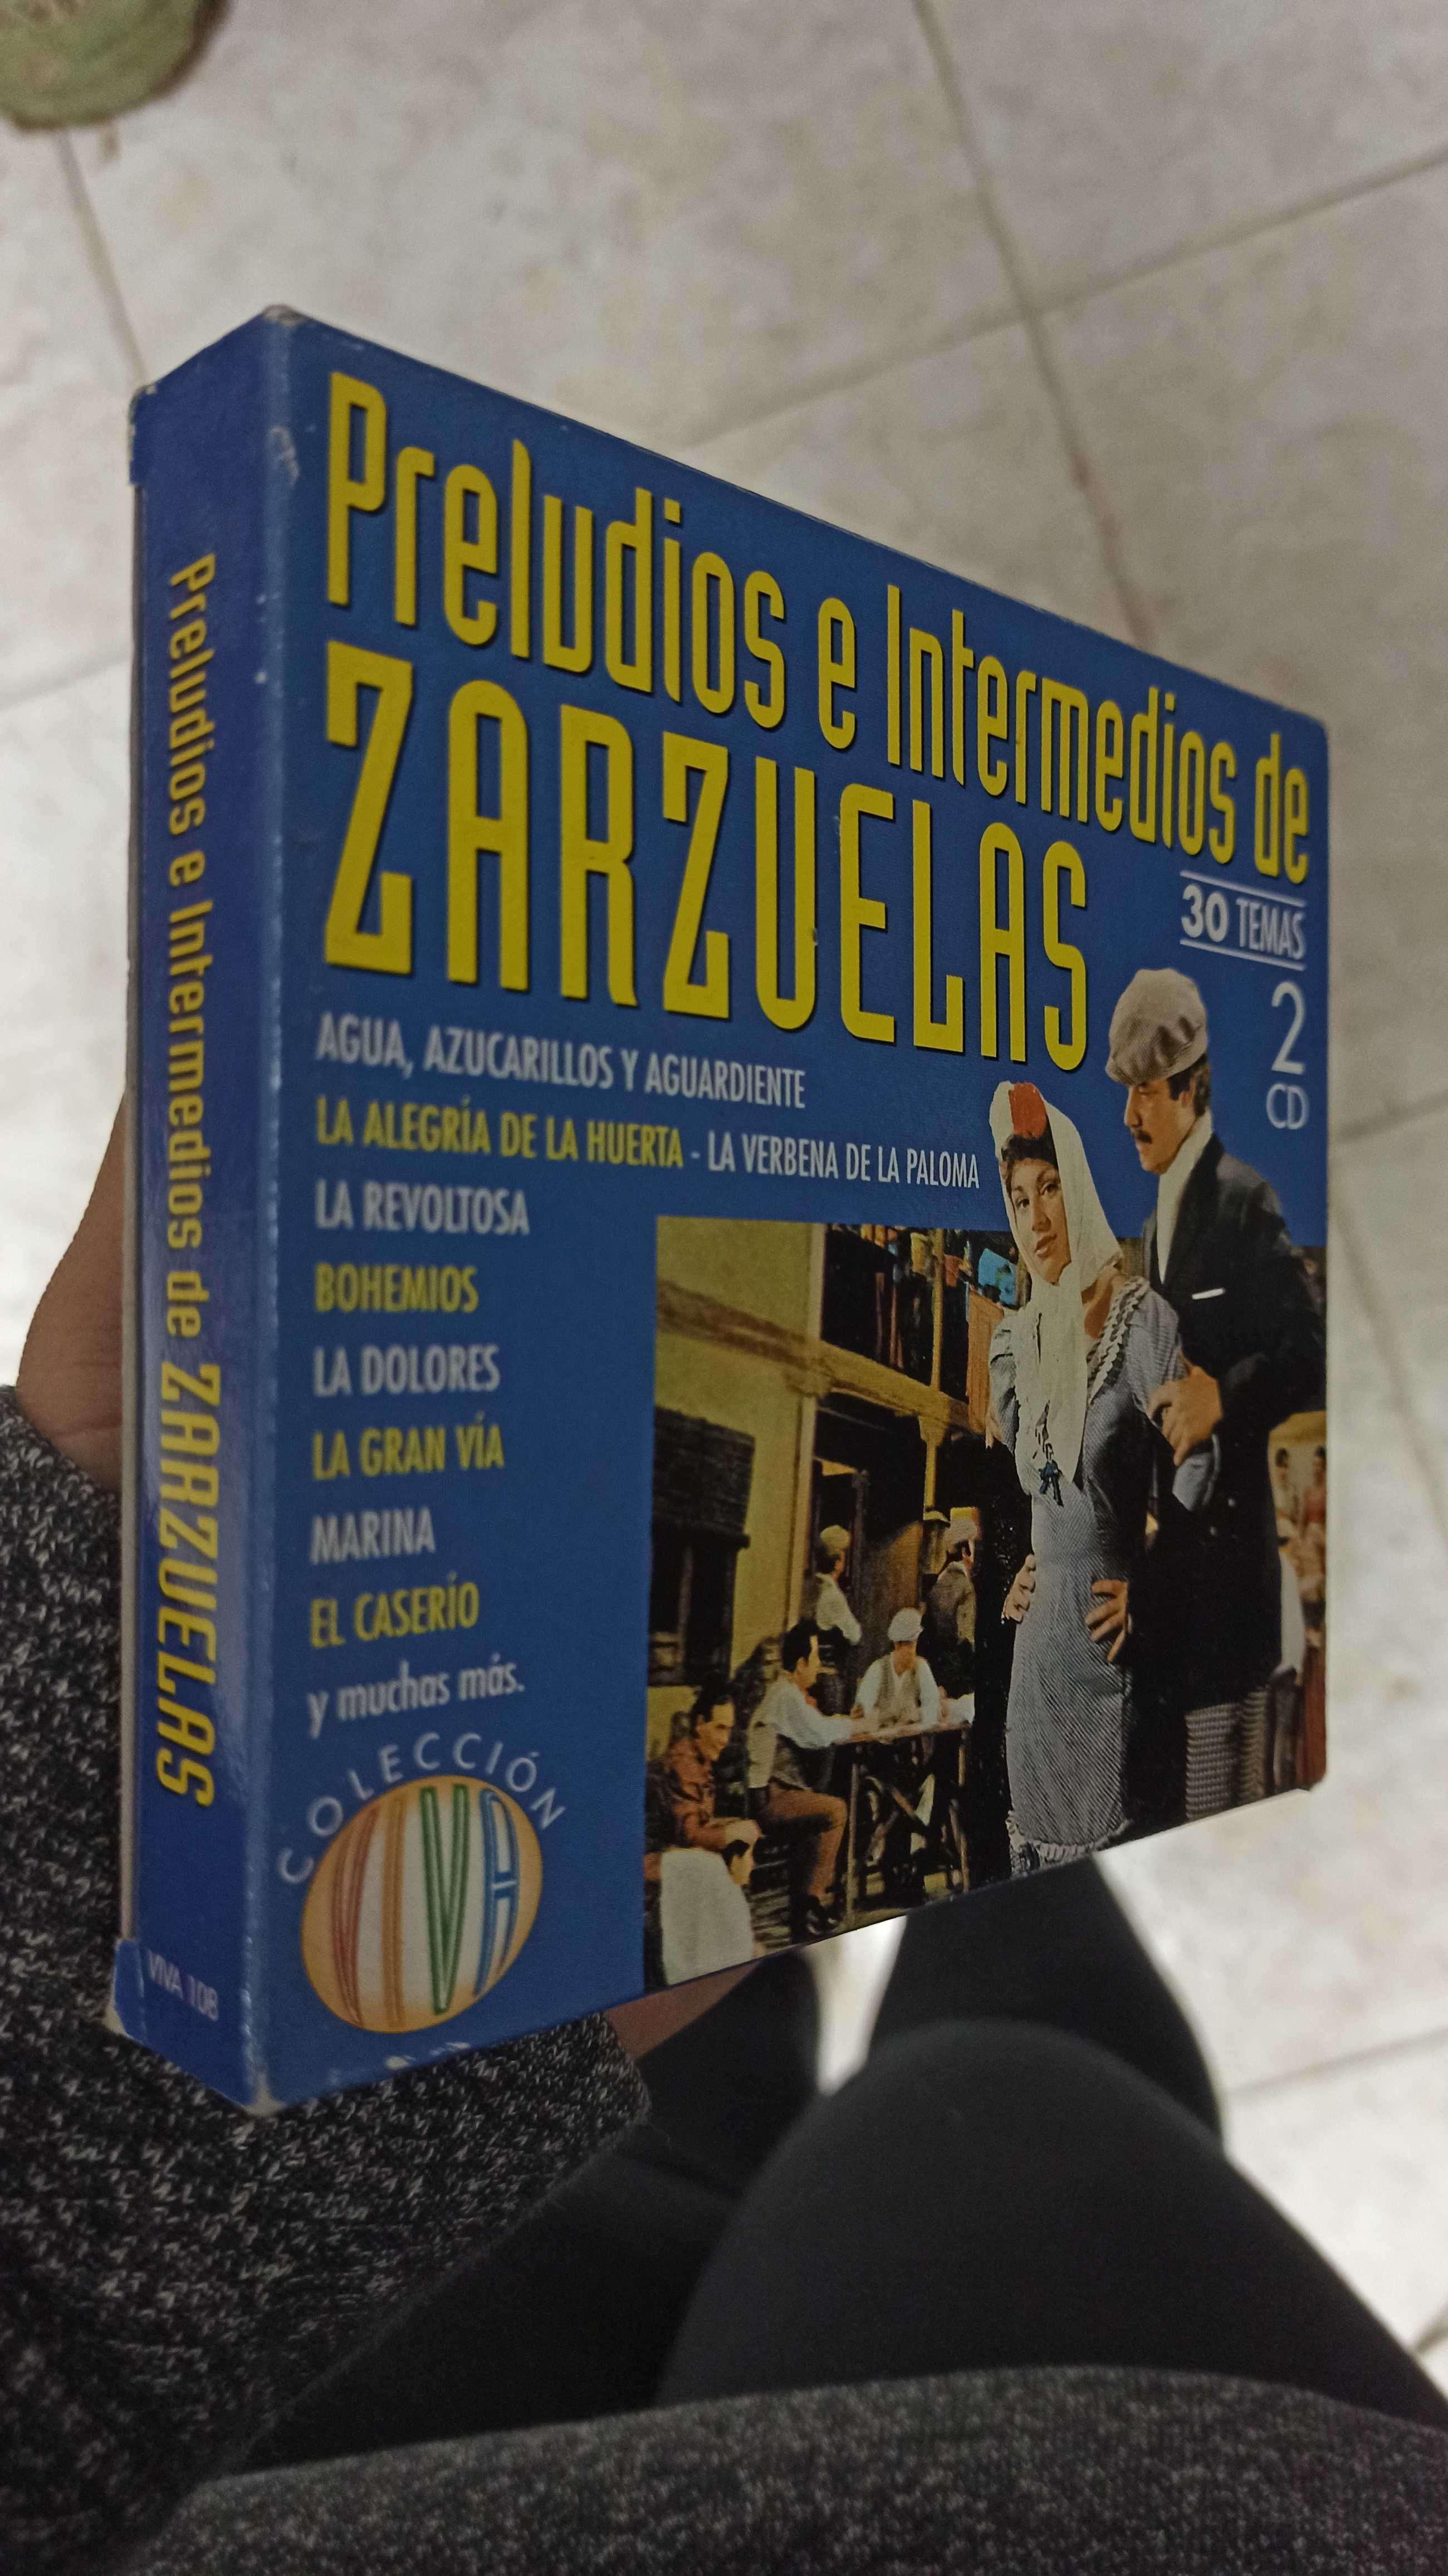 CD "Preludios e Intermédios de Zarzuelas - 2CD"